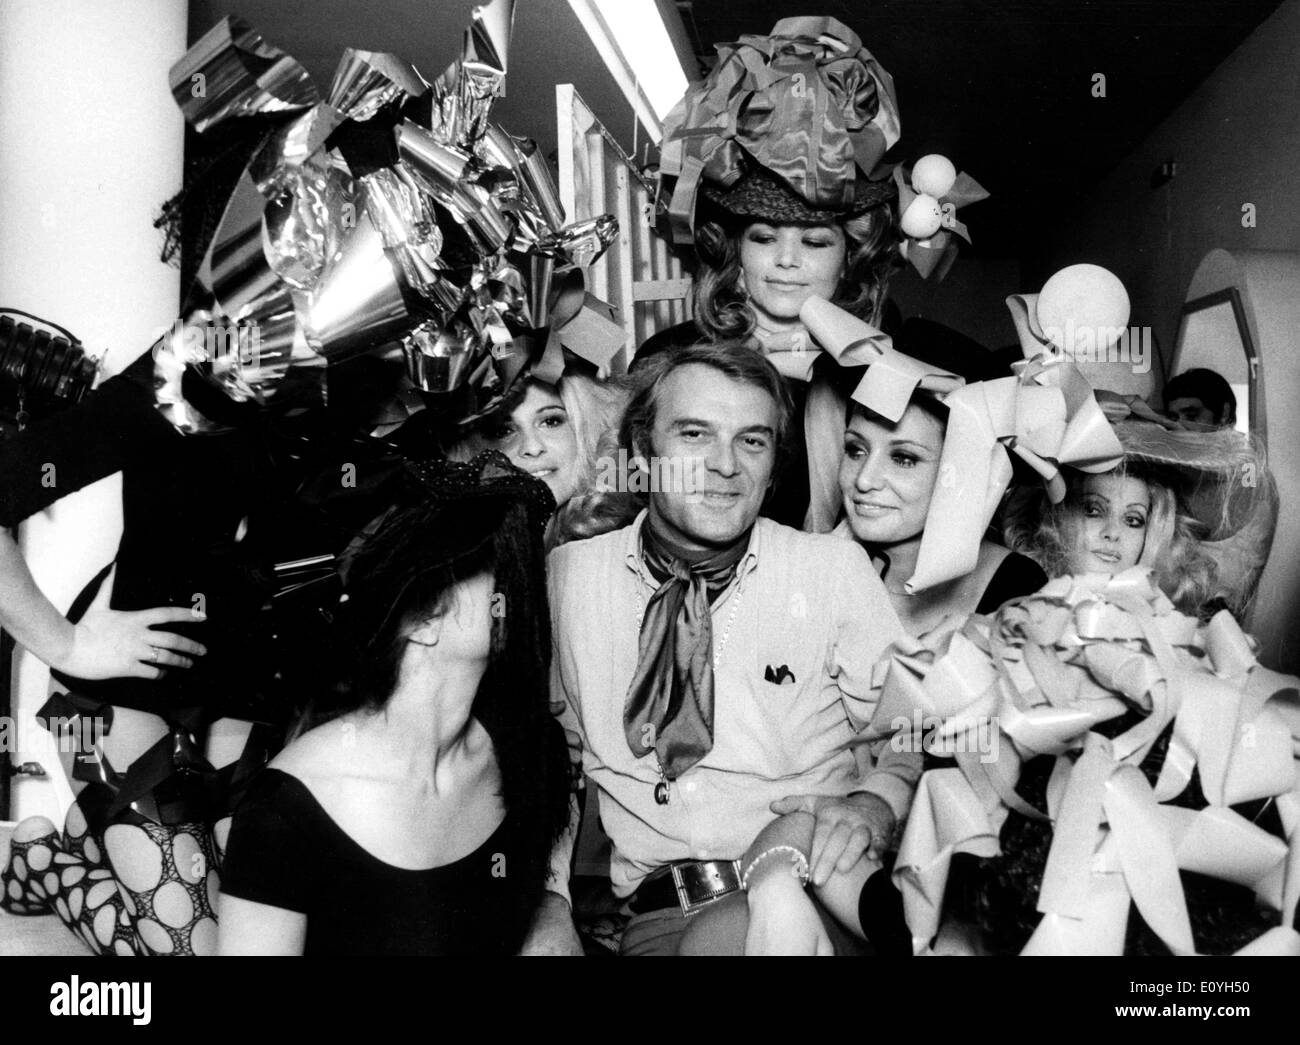 14 mai, 1970 ; Rome, Italie, le célèbre acteur italien Giorgio ALBERTAZZI, célèbre pour son rôle dans 'Dr. Jeckill' TV Play, dirige son premier film 'Gradiva' dans lequel apparaît une foule de belles filles. La photo montre Giorgio encerclé par les filles. Banque D'Images